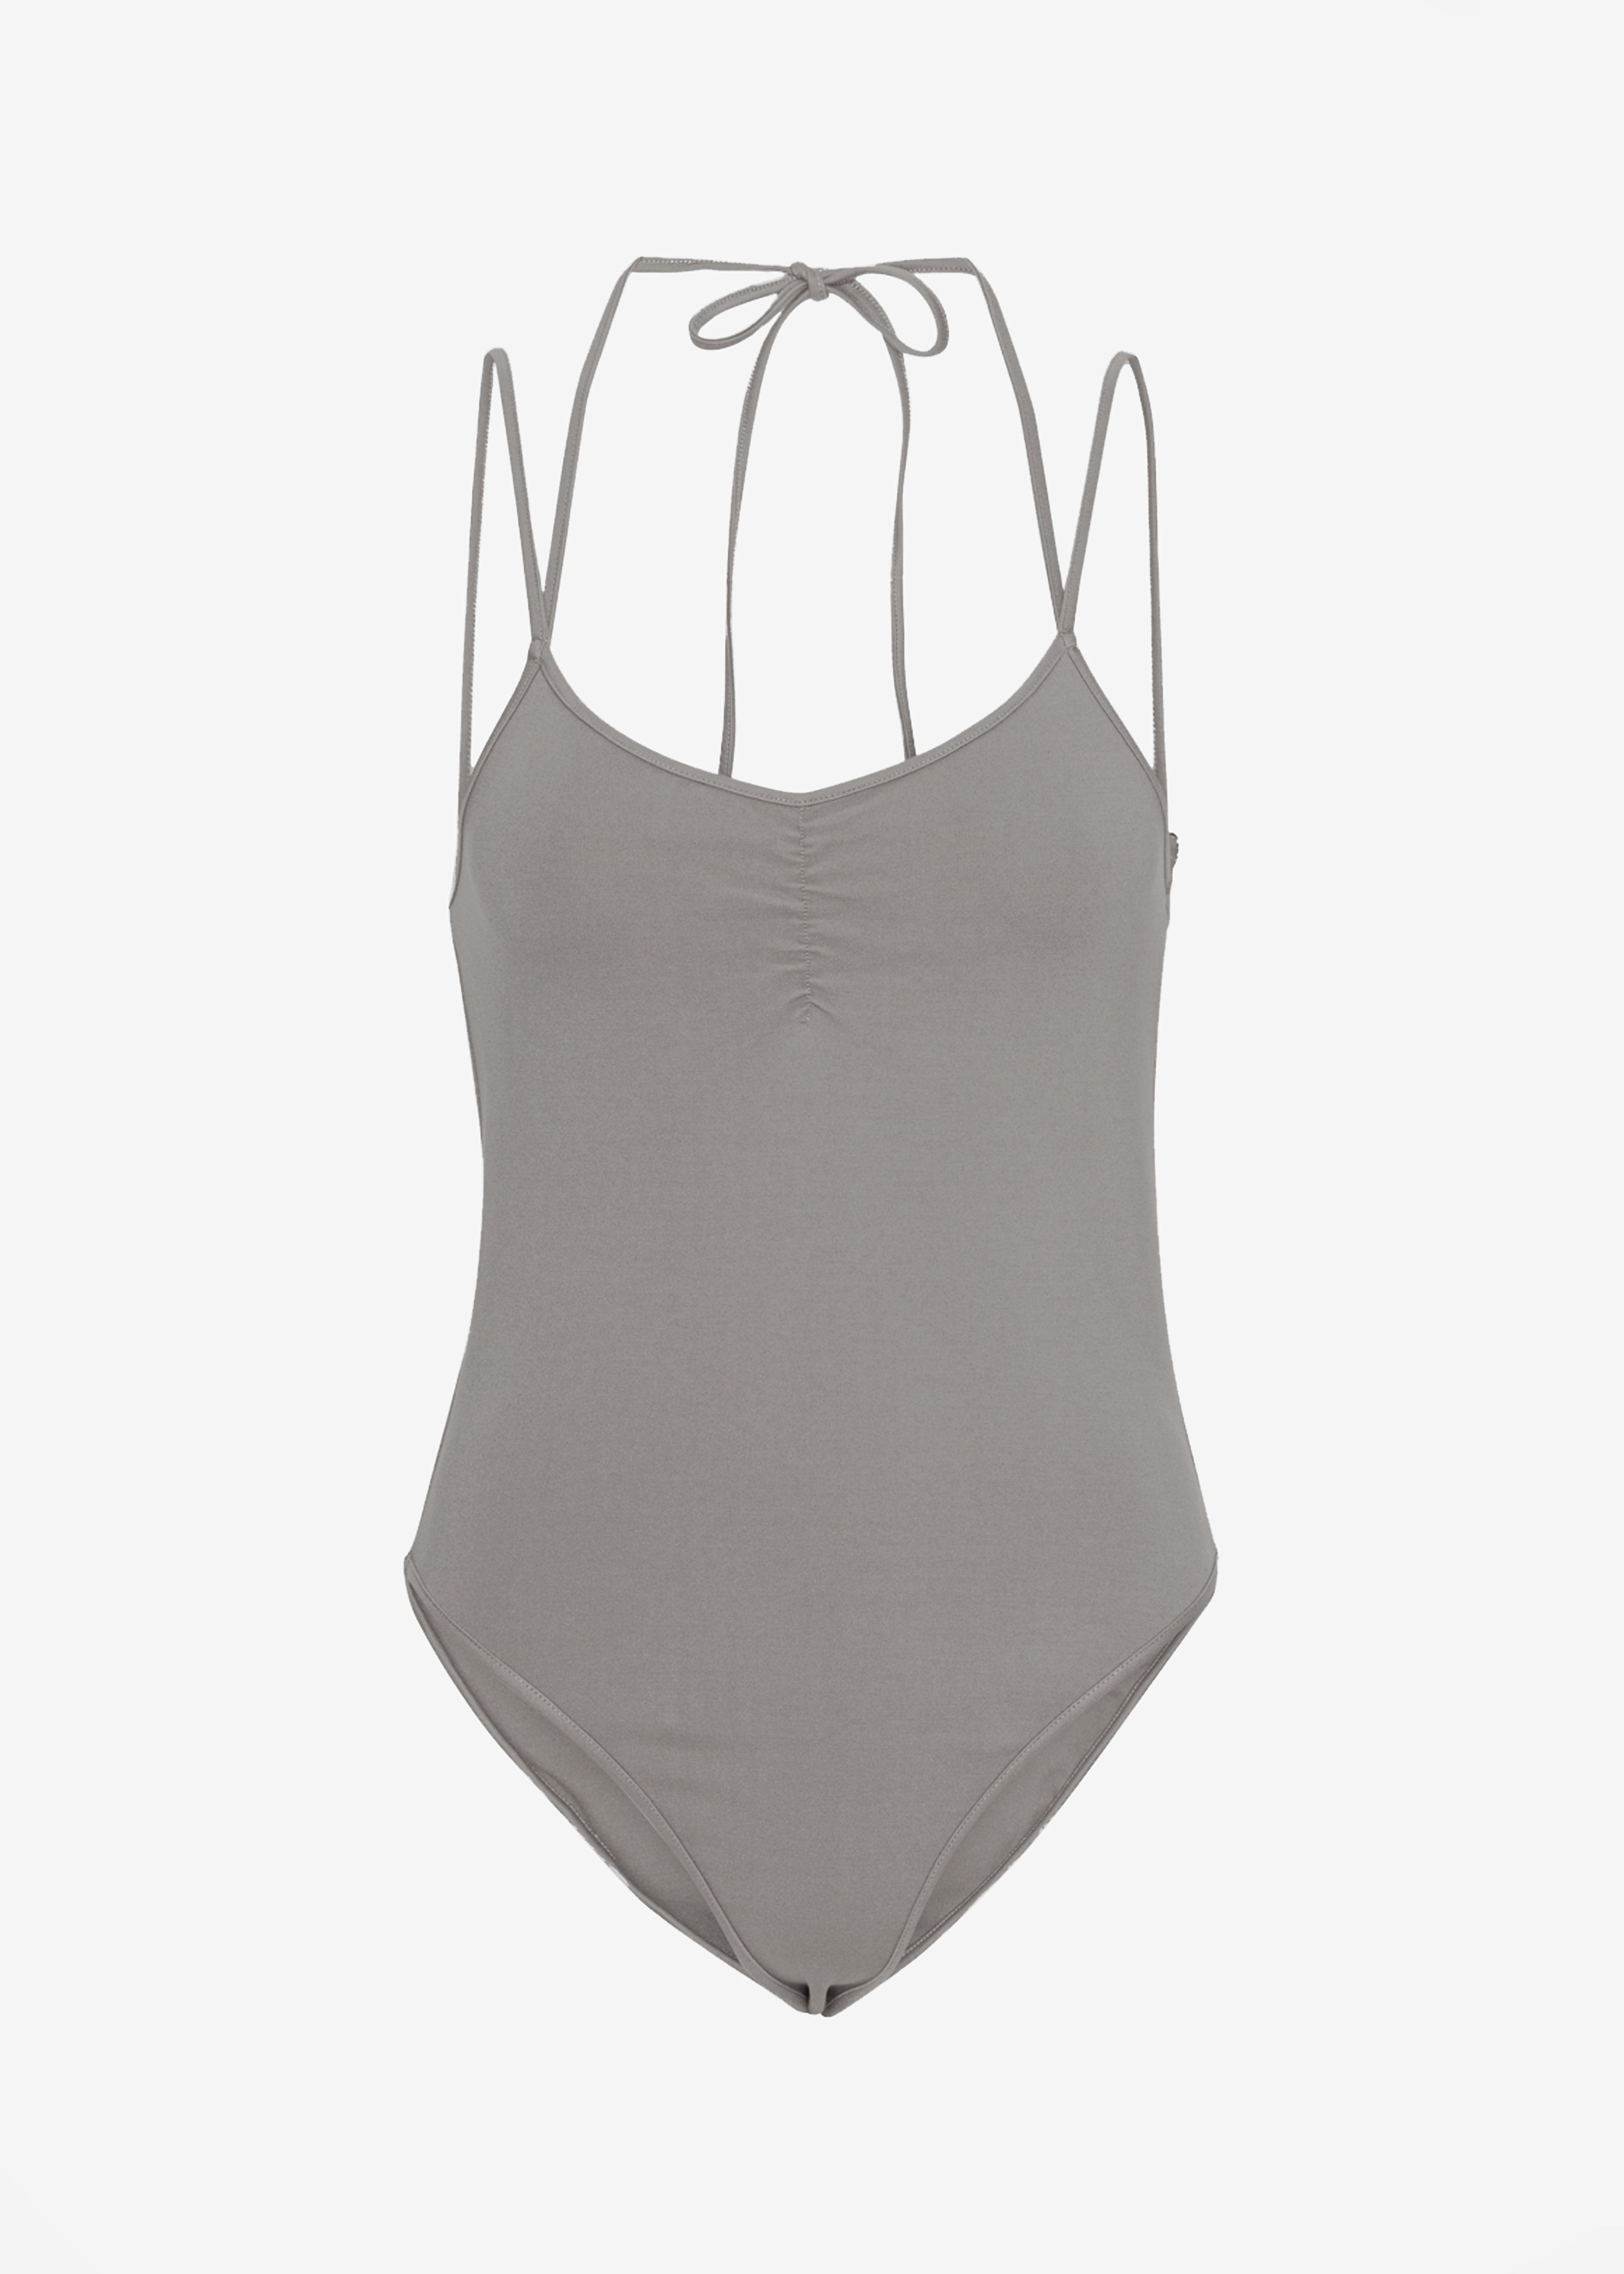 Velvet Fabric Solid Grey Color Full Stretch By Yard for swimwear dancewear  dress gymwear (151-2)